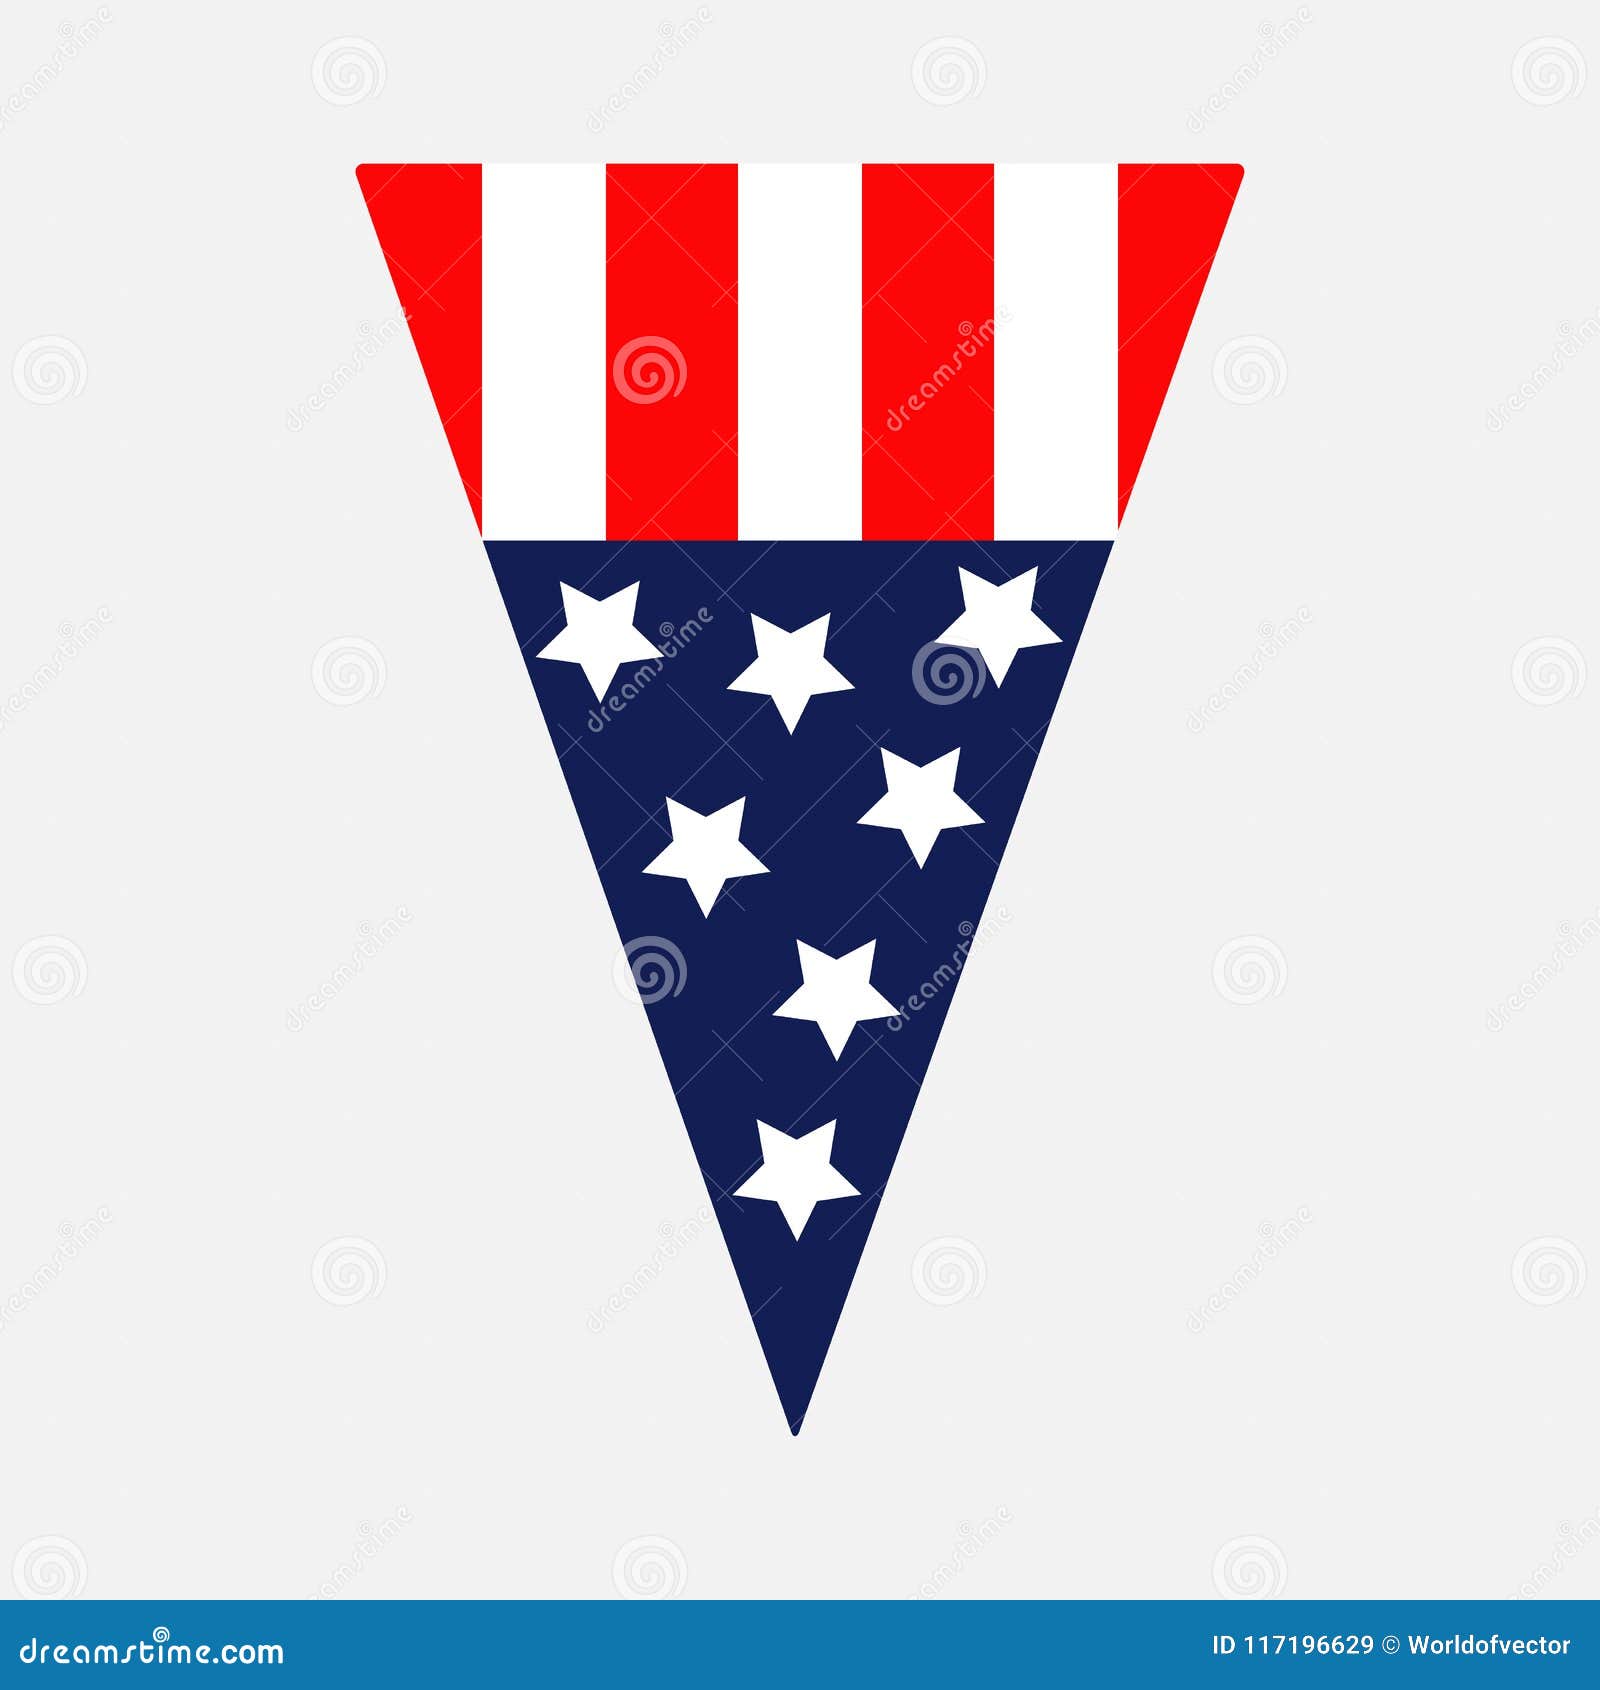 Stern Und Streifenikone Dreieckwimpelform Amerikanischer Flagge Getrennt Rote Und Blaue Farbe Weisser Hintergrund Feiertagszeiche Vektor Abbildung Illustration Von Streifenikone Weisser